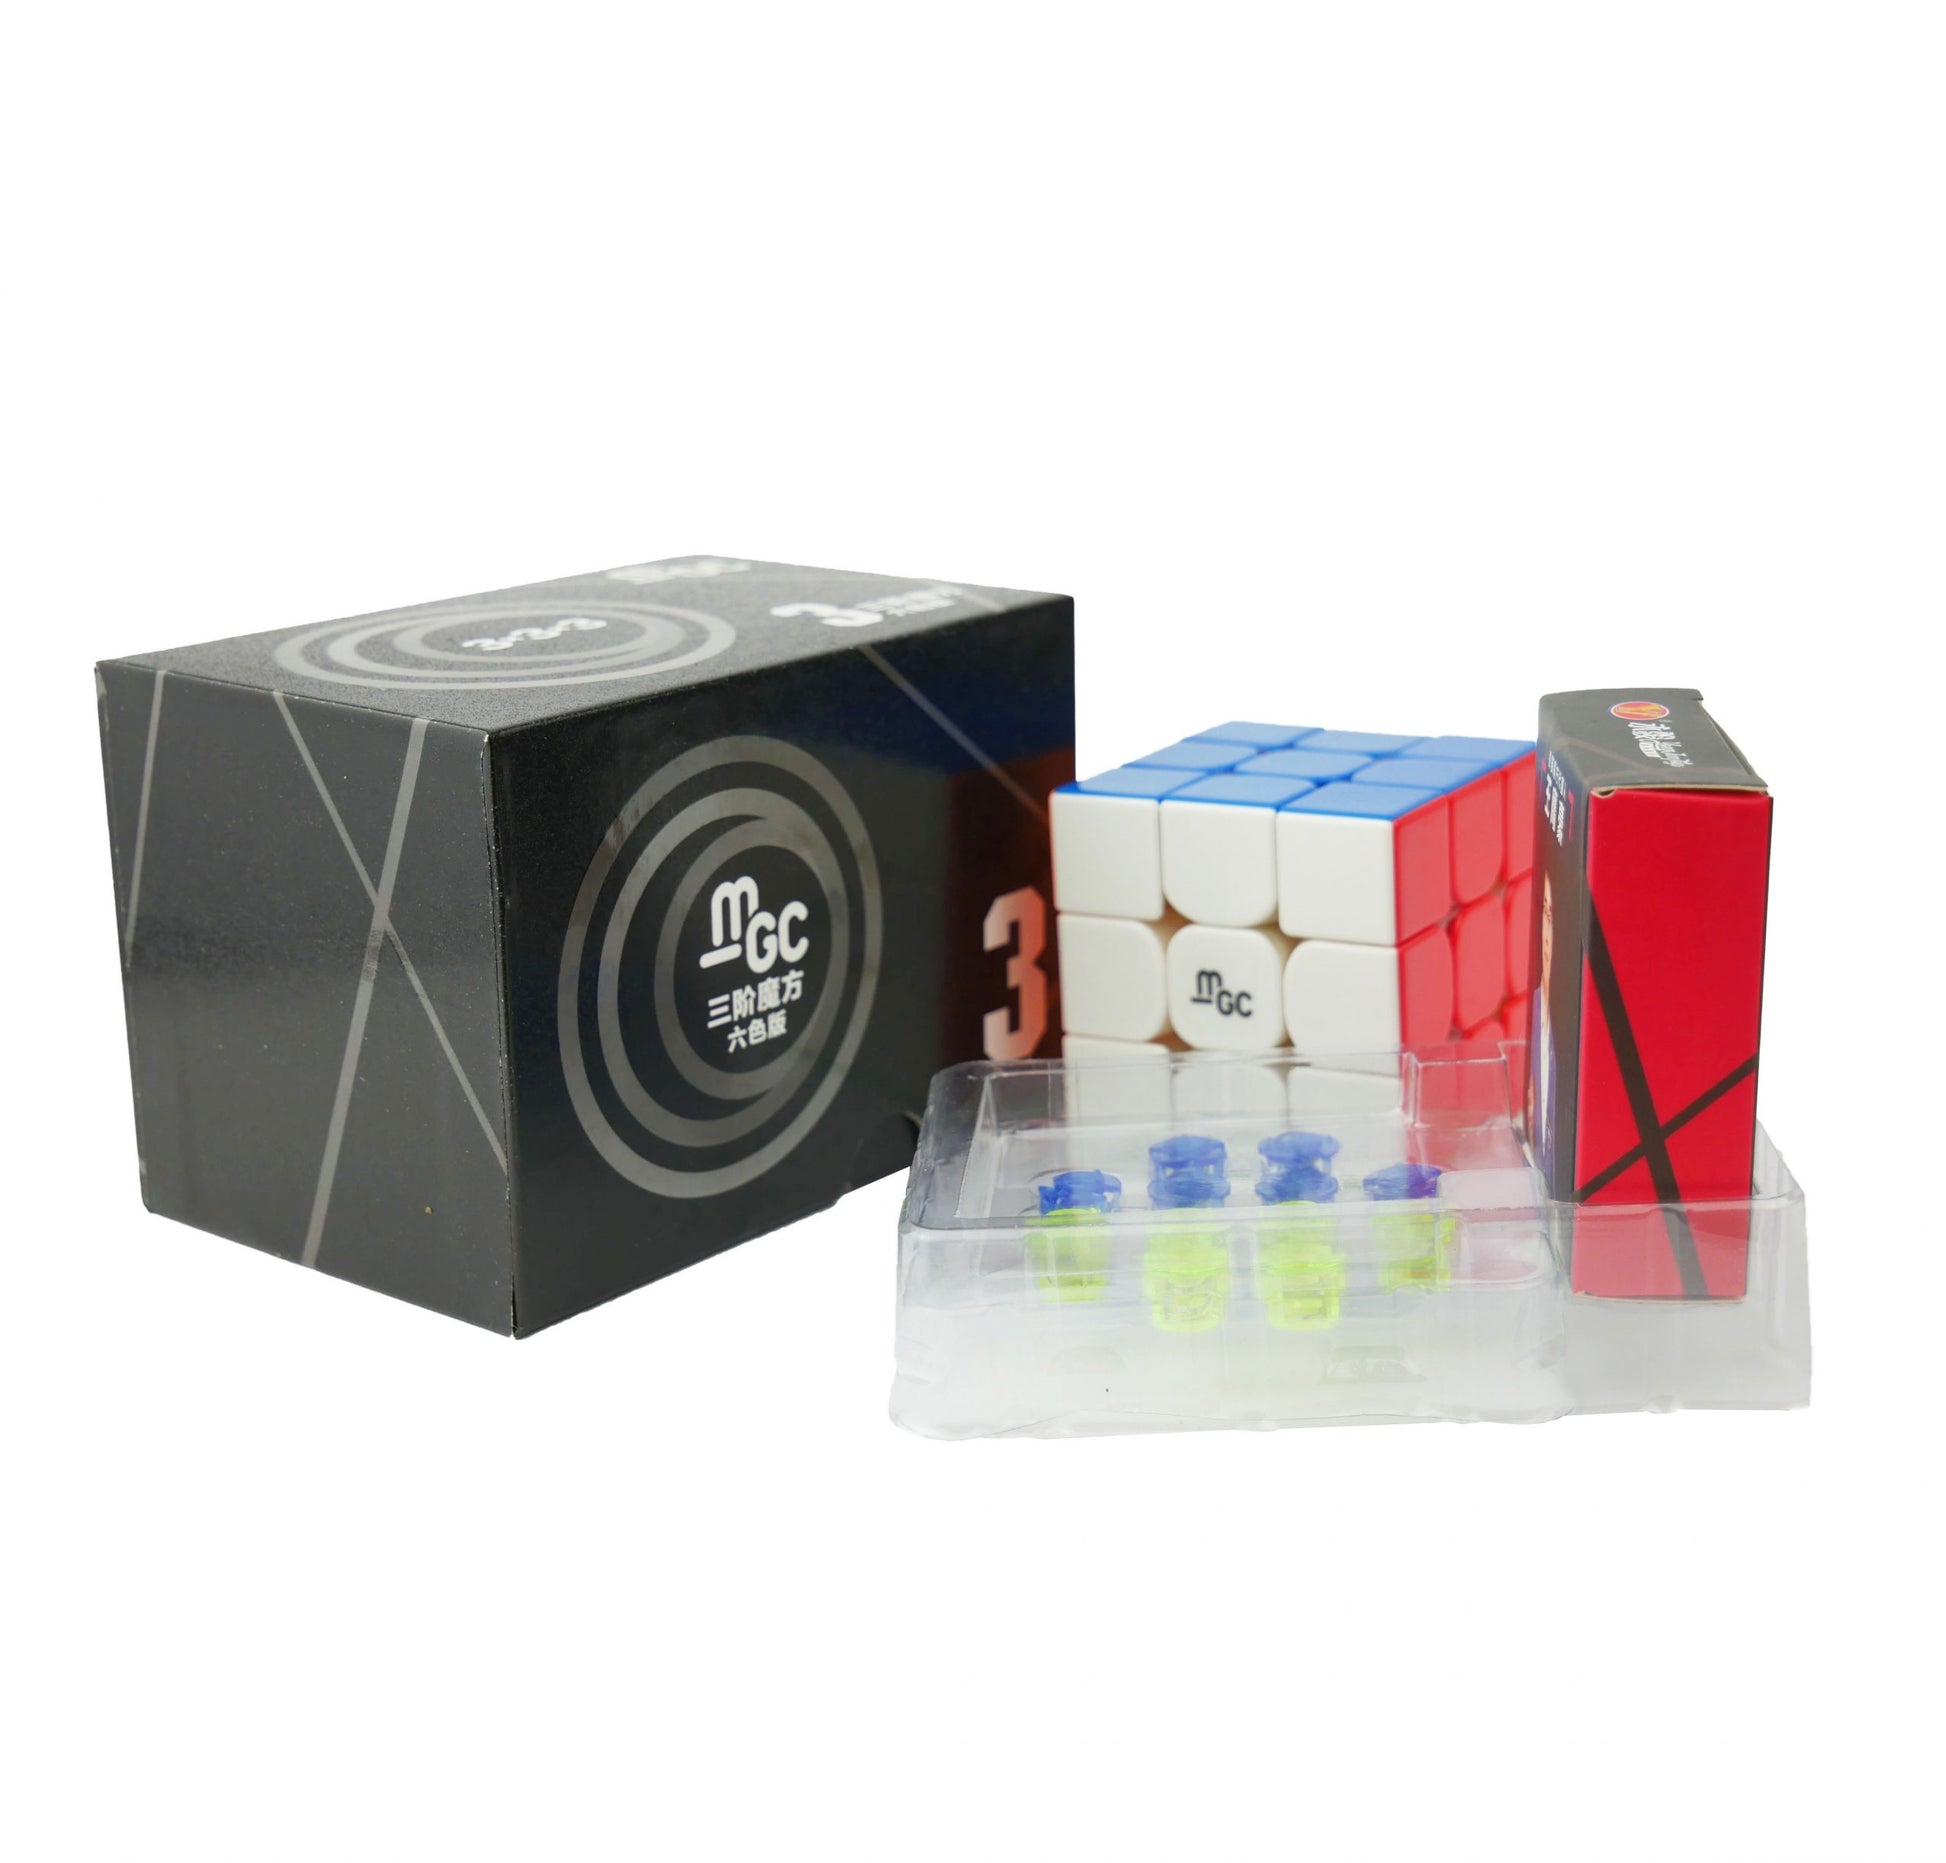 YJ MGC V2 3x3 MZauberwŸrfel Rubik WŸrfel Speedcube